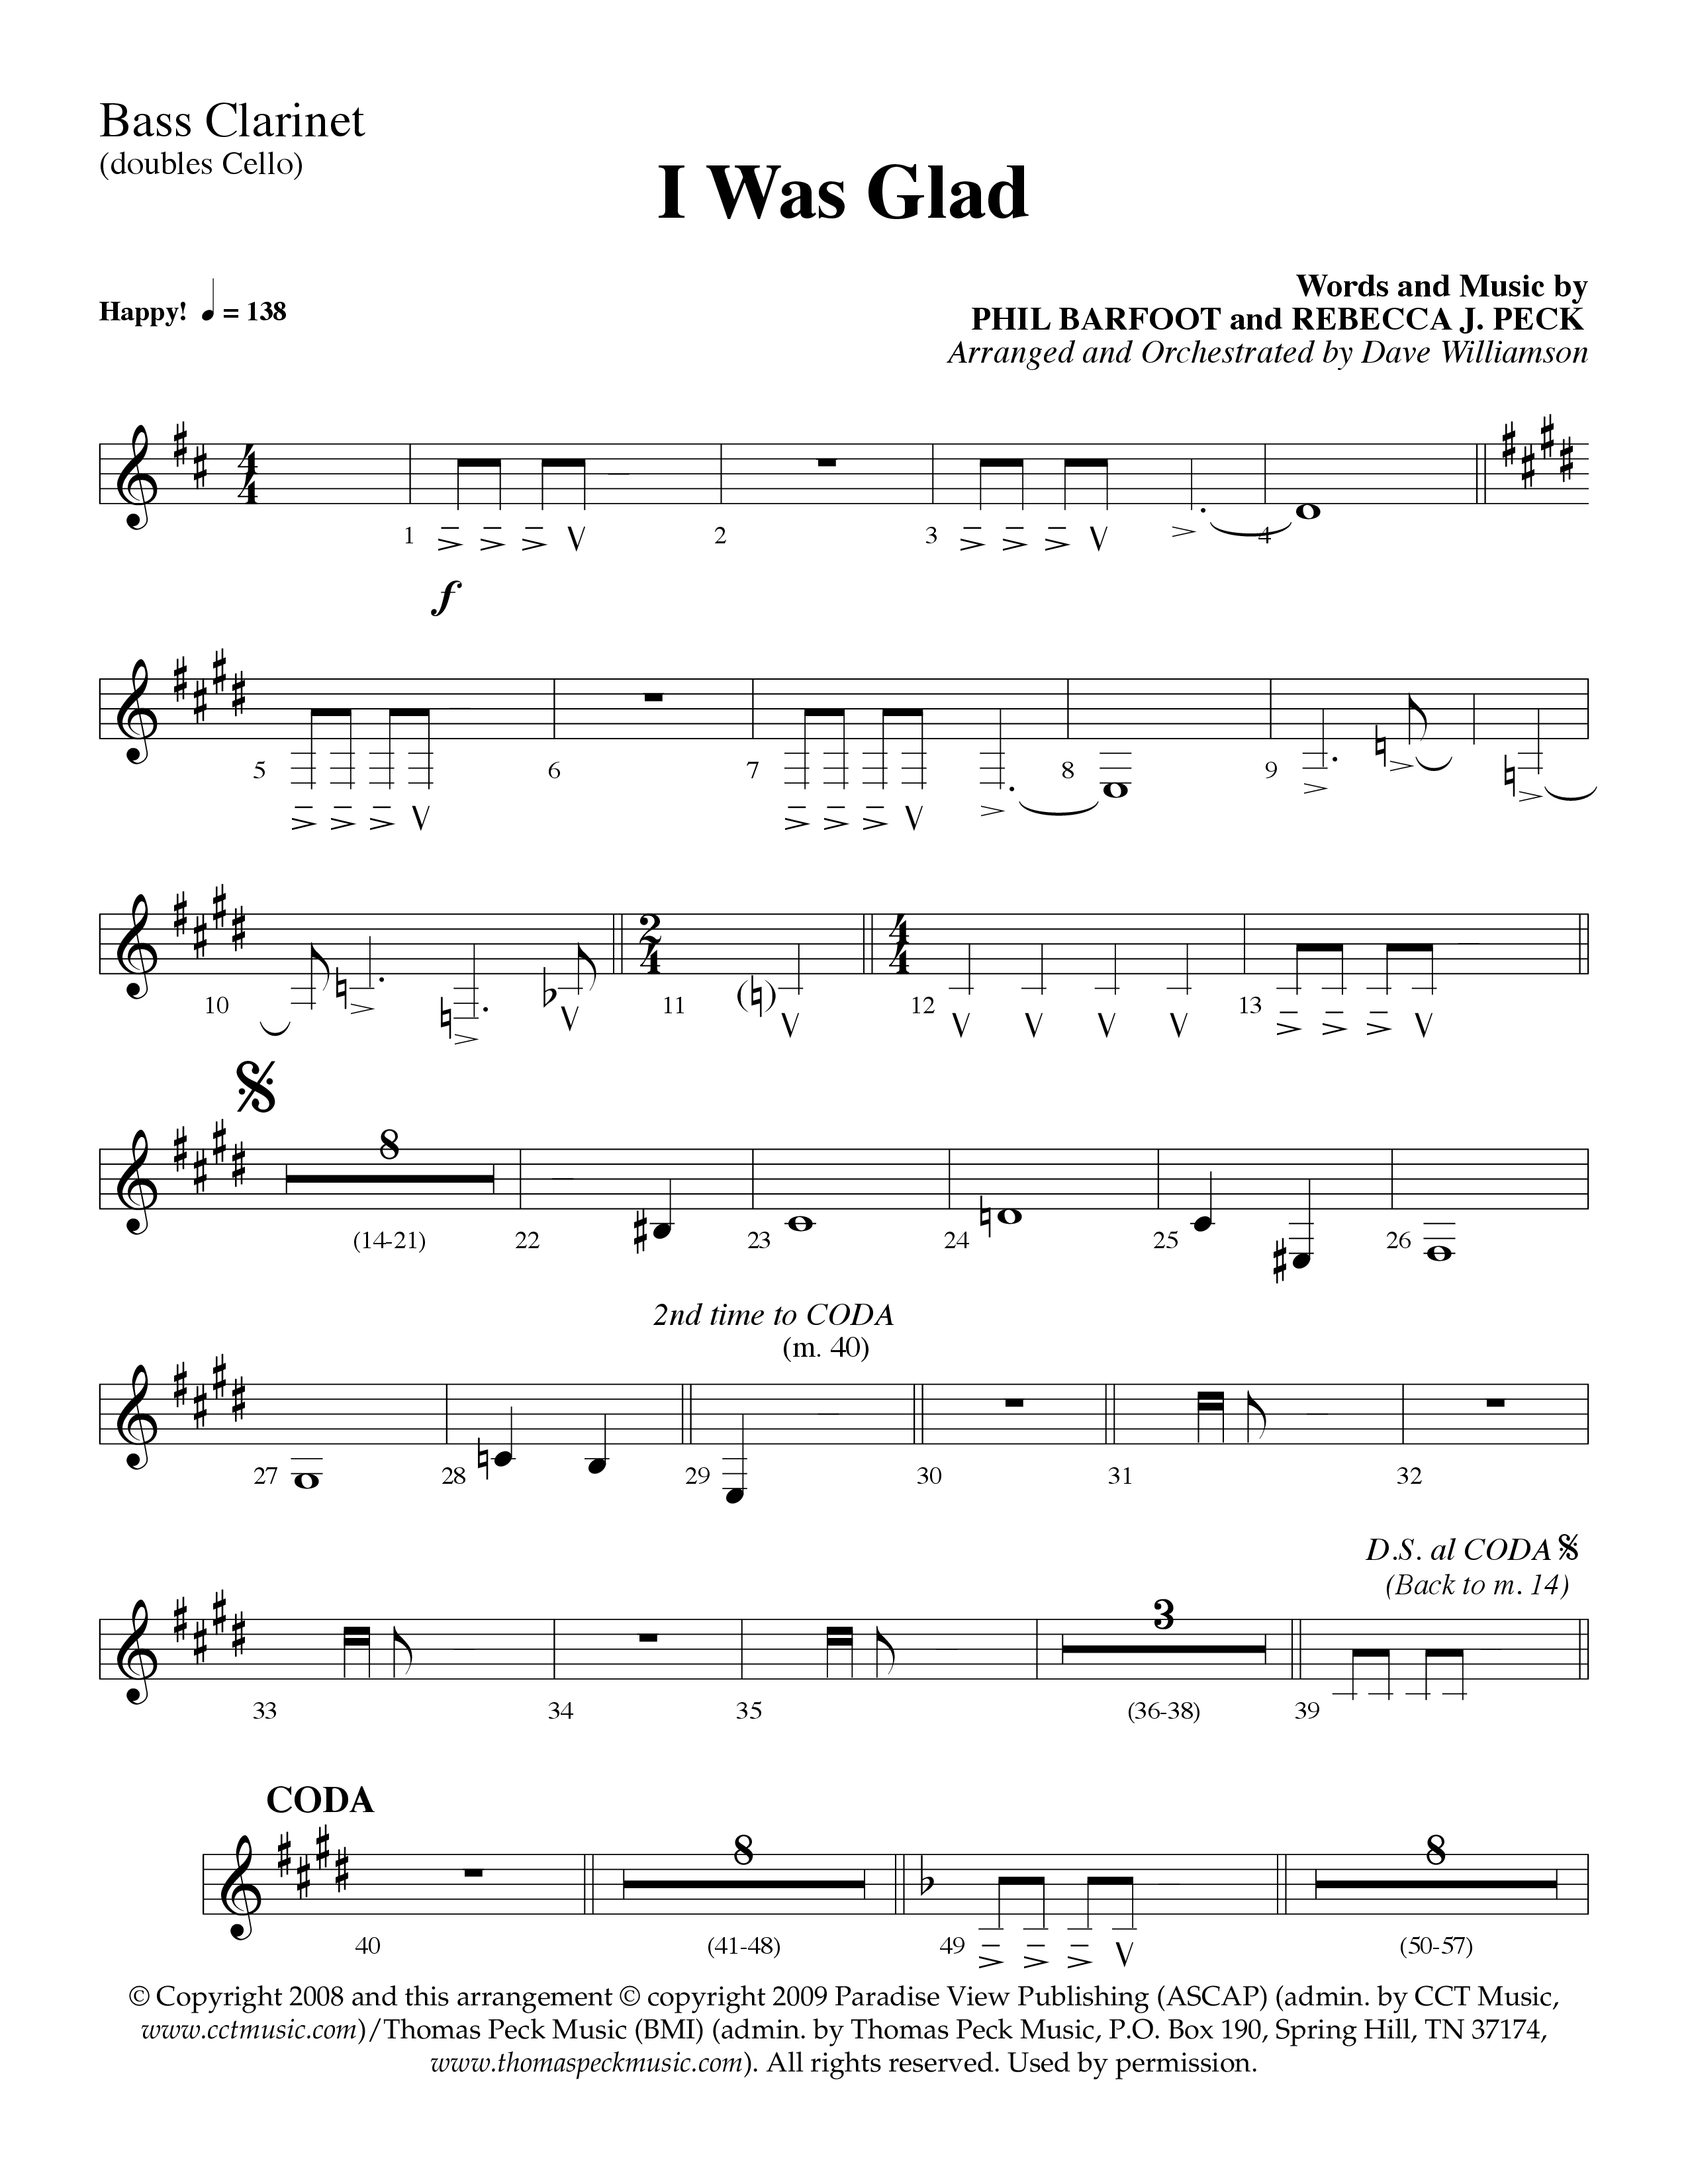 I Was Glad (Choral Anthem SATB) Bass Clarinet (Lifeway Choral / Arr. Dave Williamson)